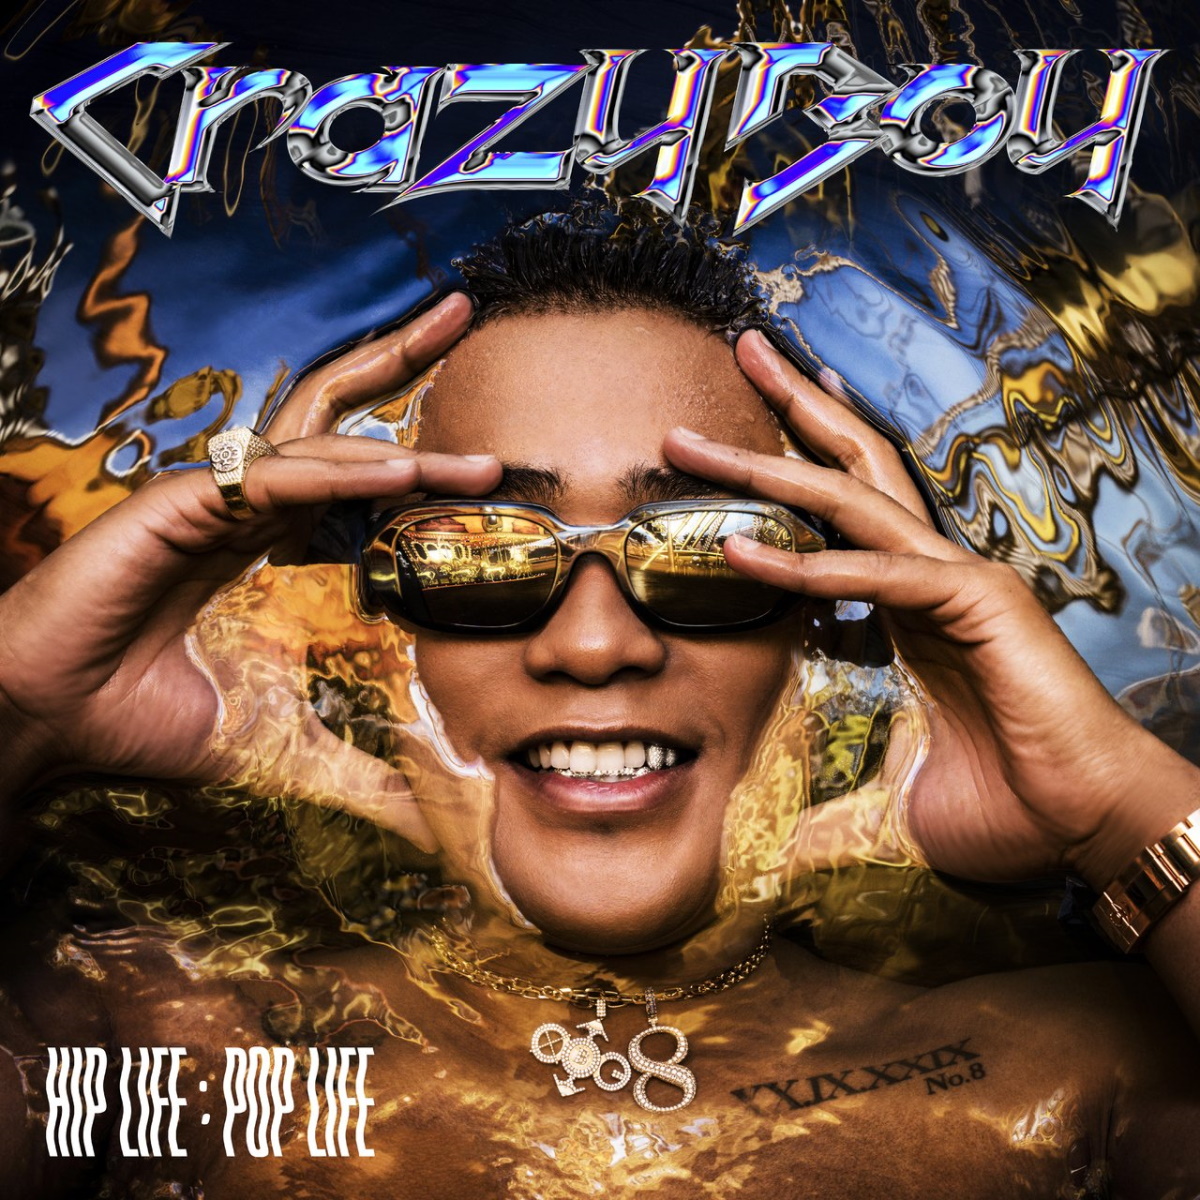 『CrazyBoy - Major / with my G.A.N.G』収録の『HIP LIFE：POP LIFE』ジャケット